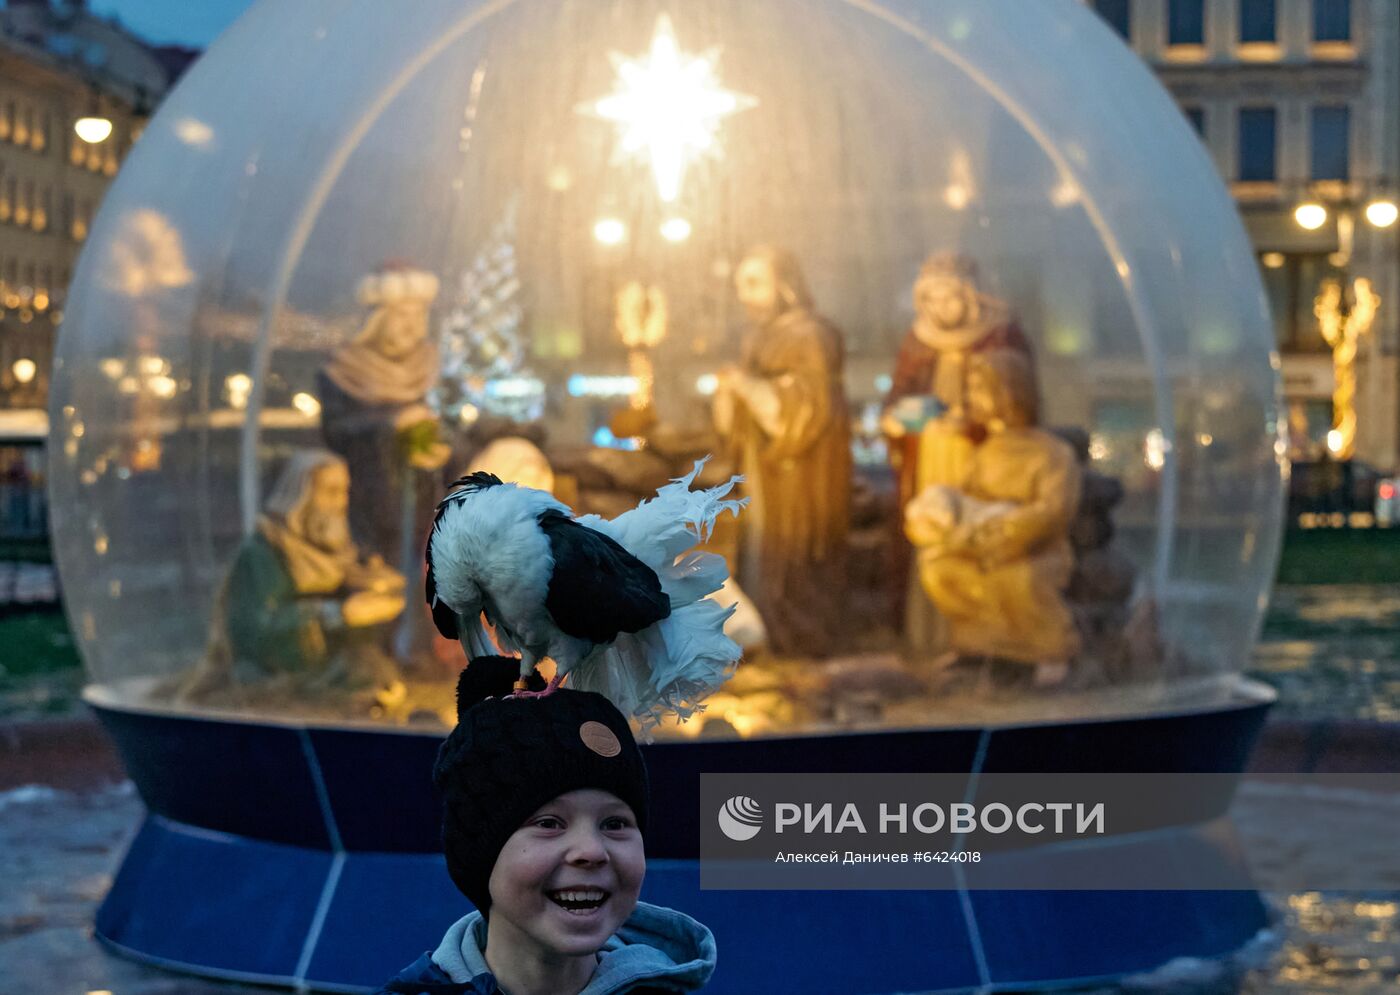 Ёлка на Дворцовой площади в Санкт-Петербурге